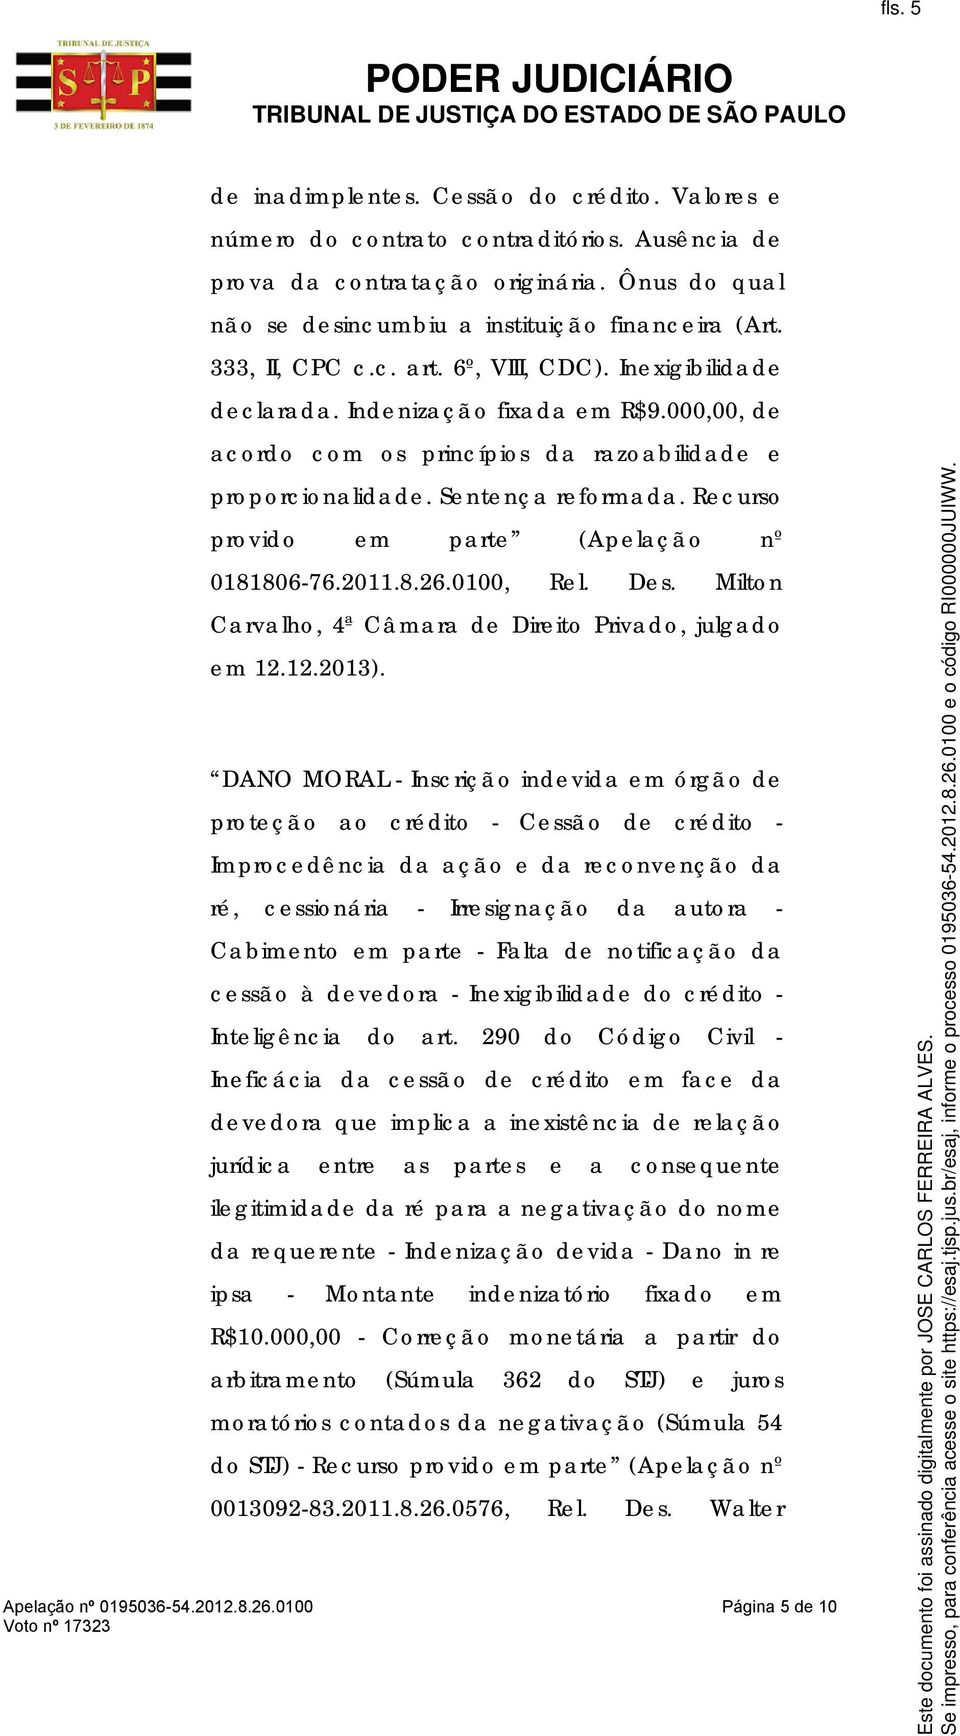 Recurso provido em parte (Apelação nº 0181806-76.2011.8.26.0100, Rel. Des. Milton Carvalho, 4ª Câmara de Direito Privado, julgado em 12.12.2013).